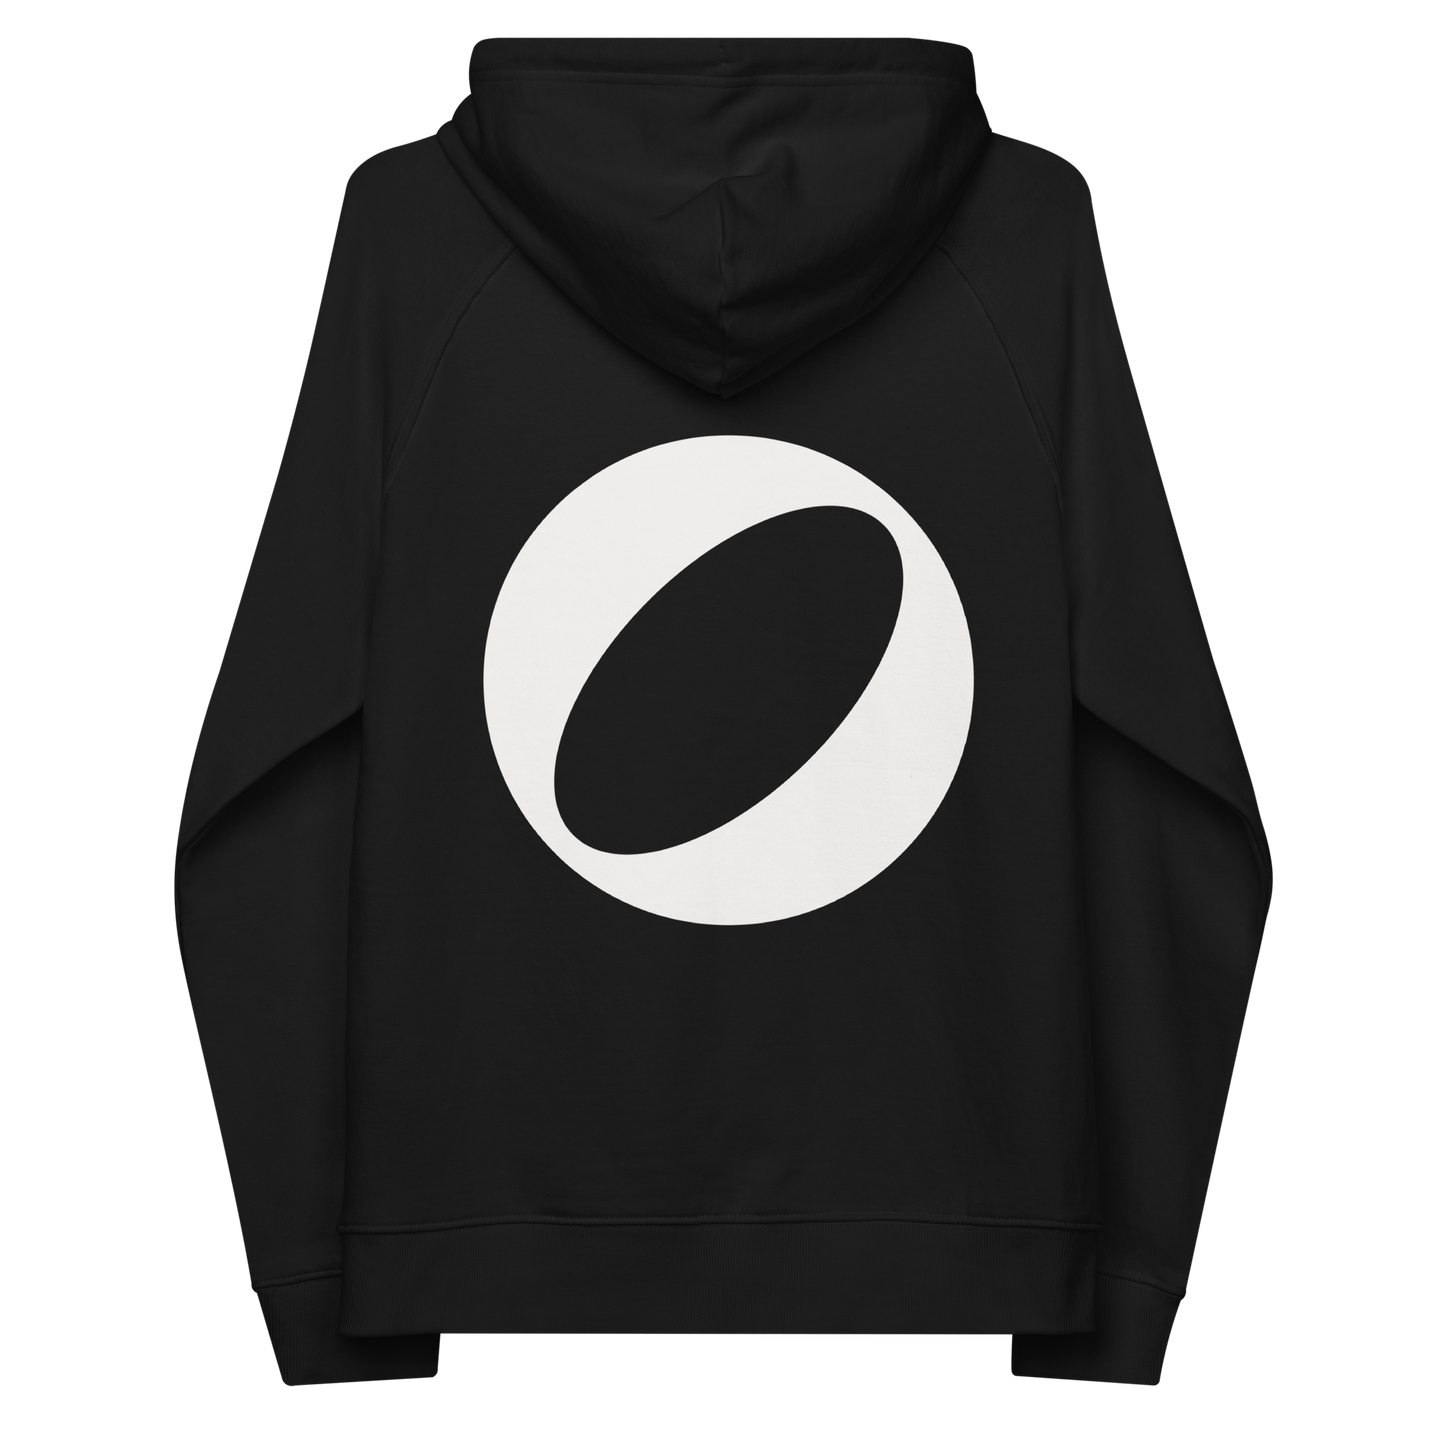 Unisex eco Glo hoodie (black)